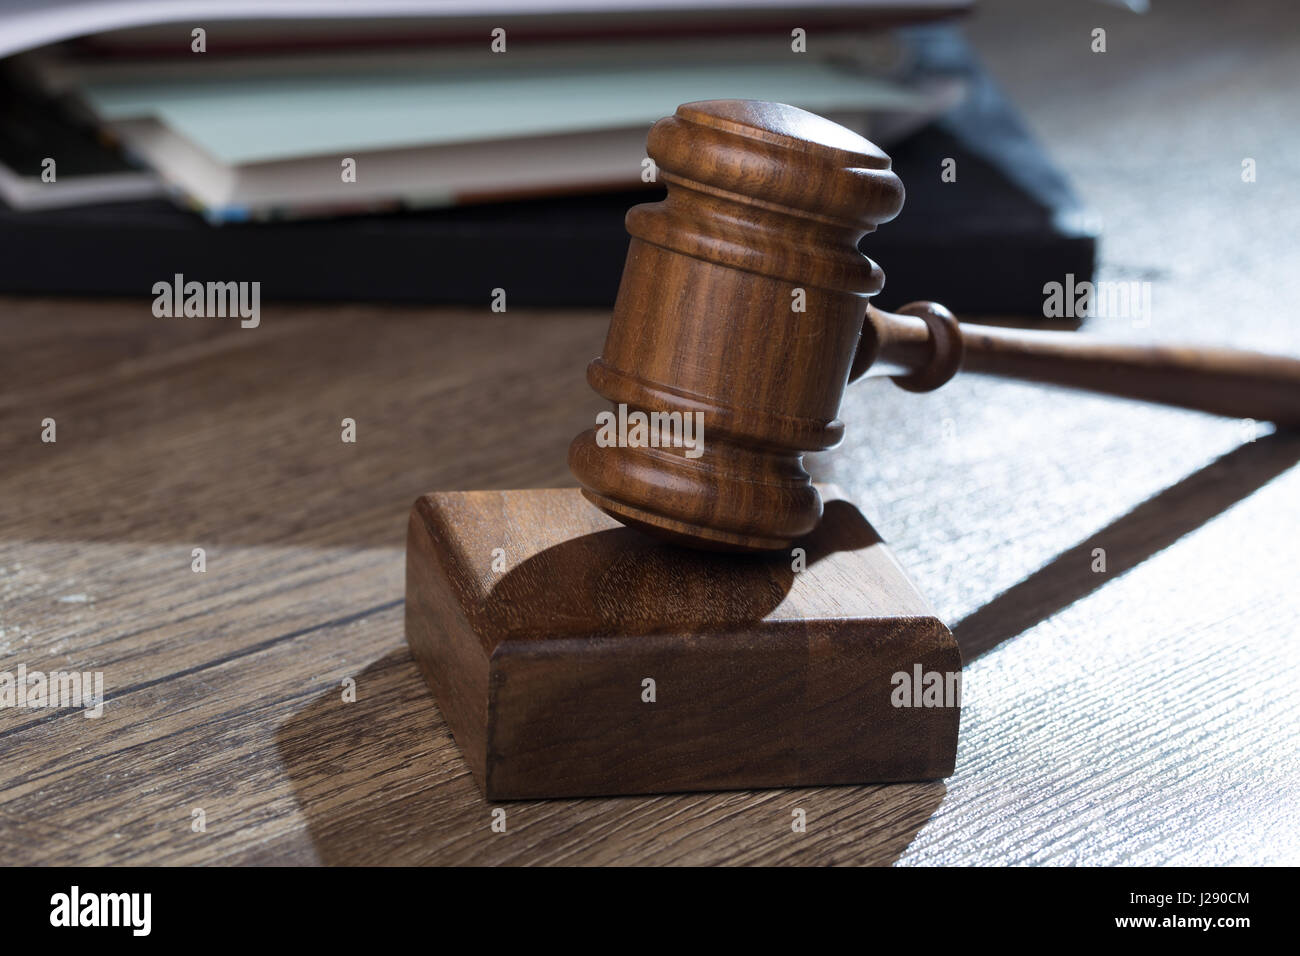 Judge hammer against of folder Stock Photo